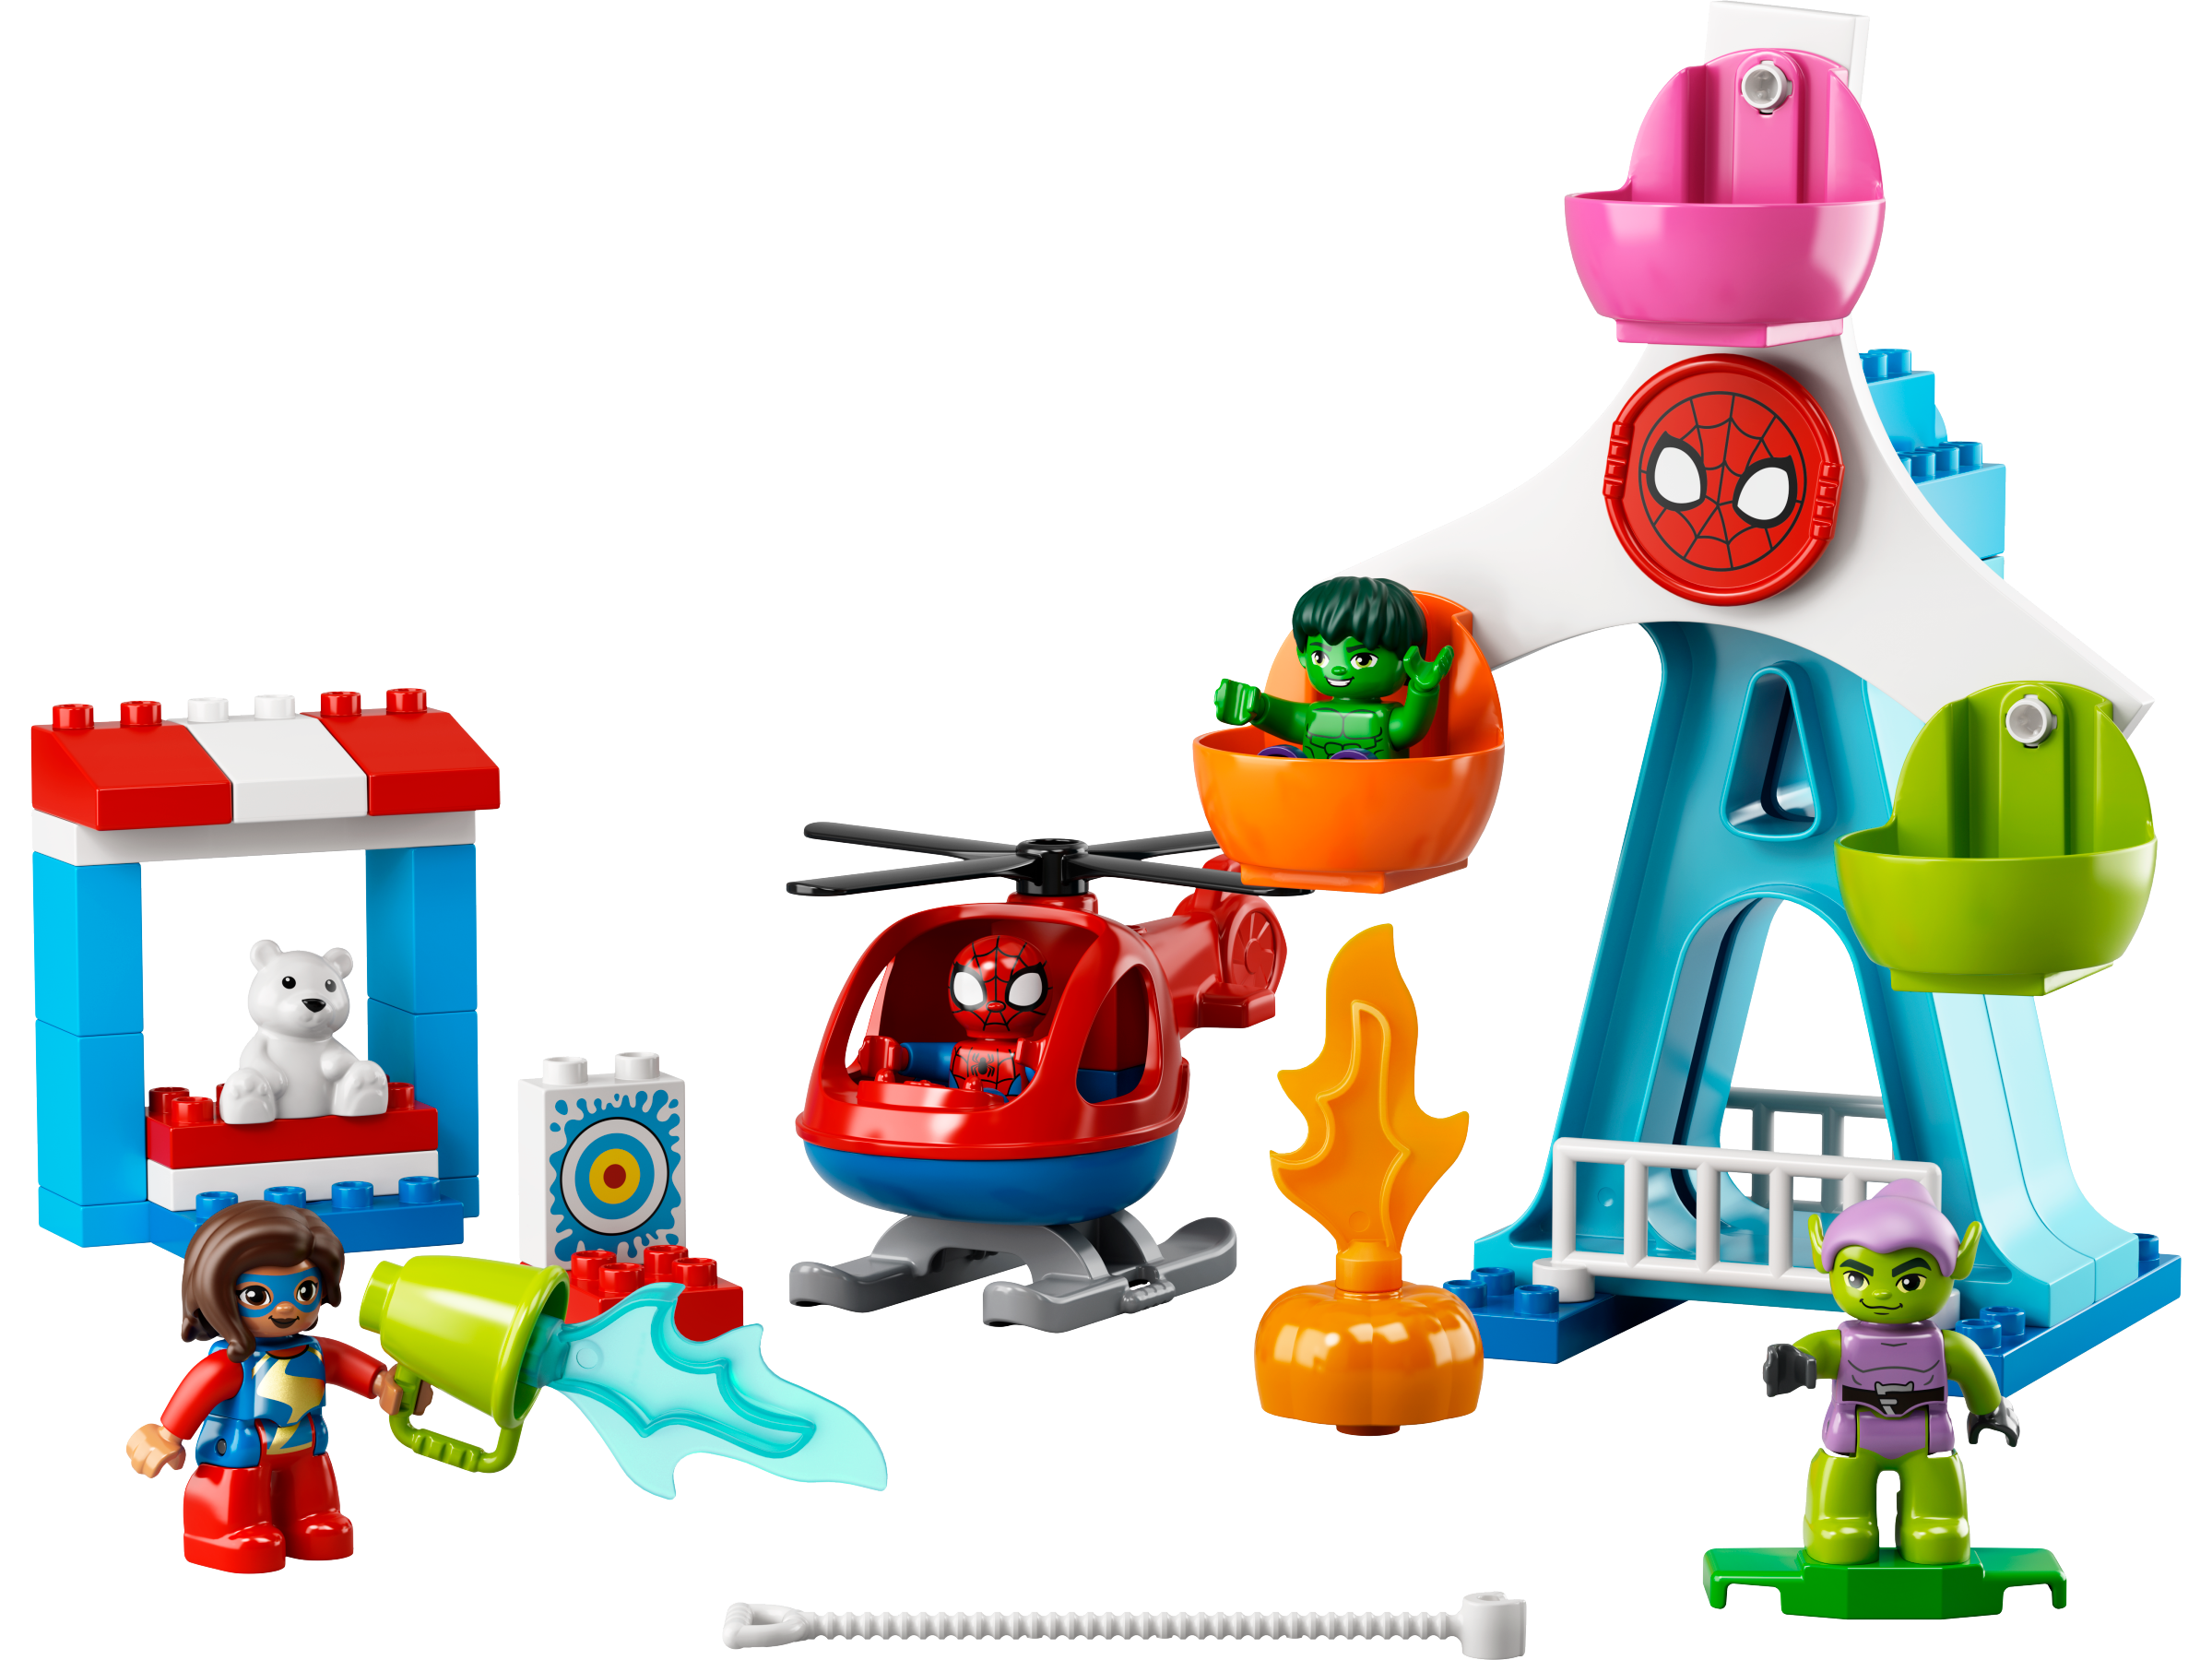 Barry knoflook Weiland Cadeaus en speelgoed voor kinderen vanaf 1,5 jaar | Peuters van 18 maanden  tot 3 jaar | Officiële LEGO® winkel NL